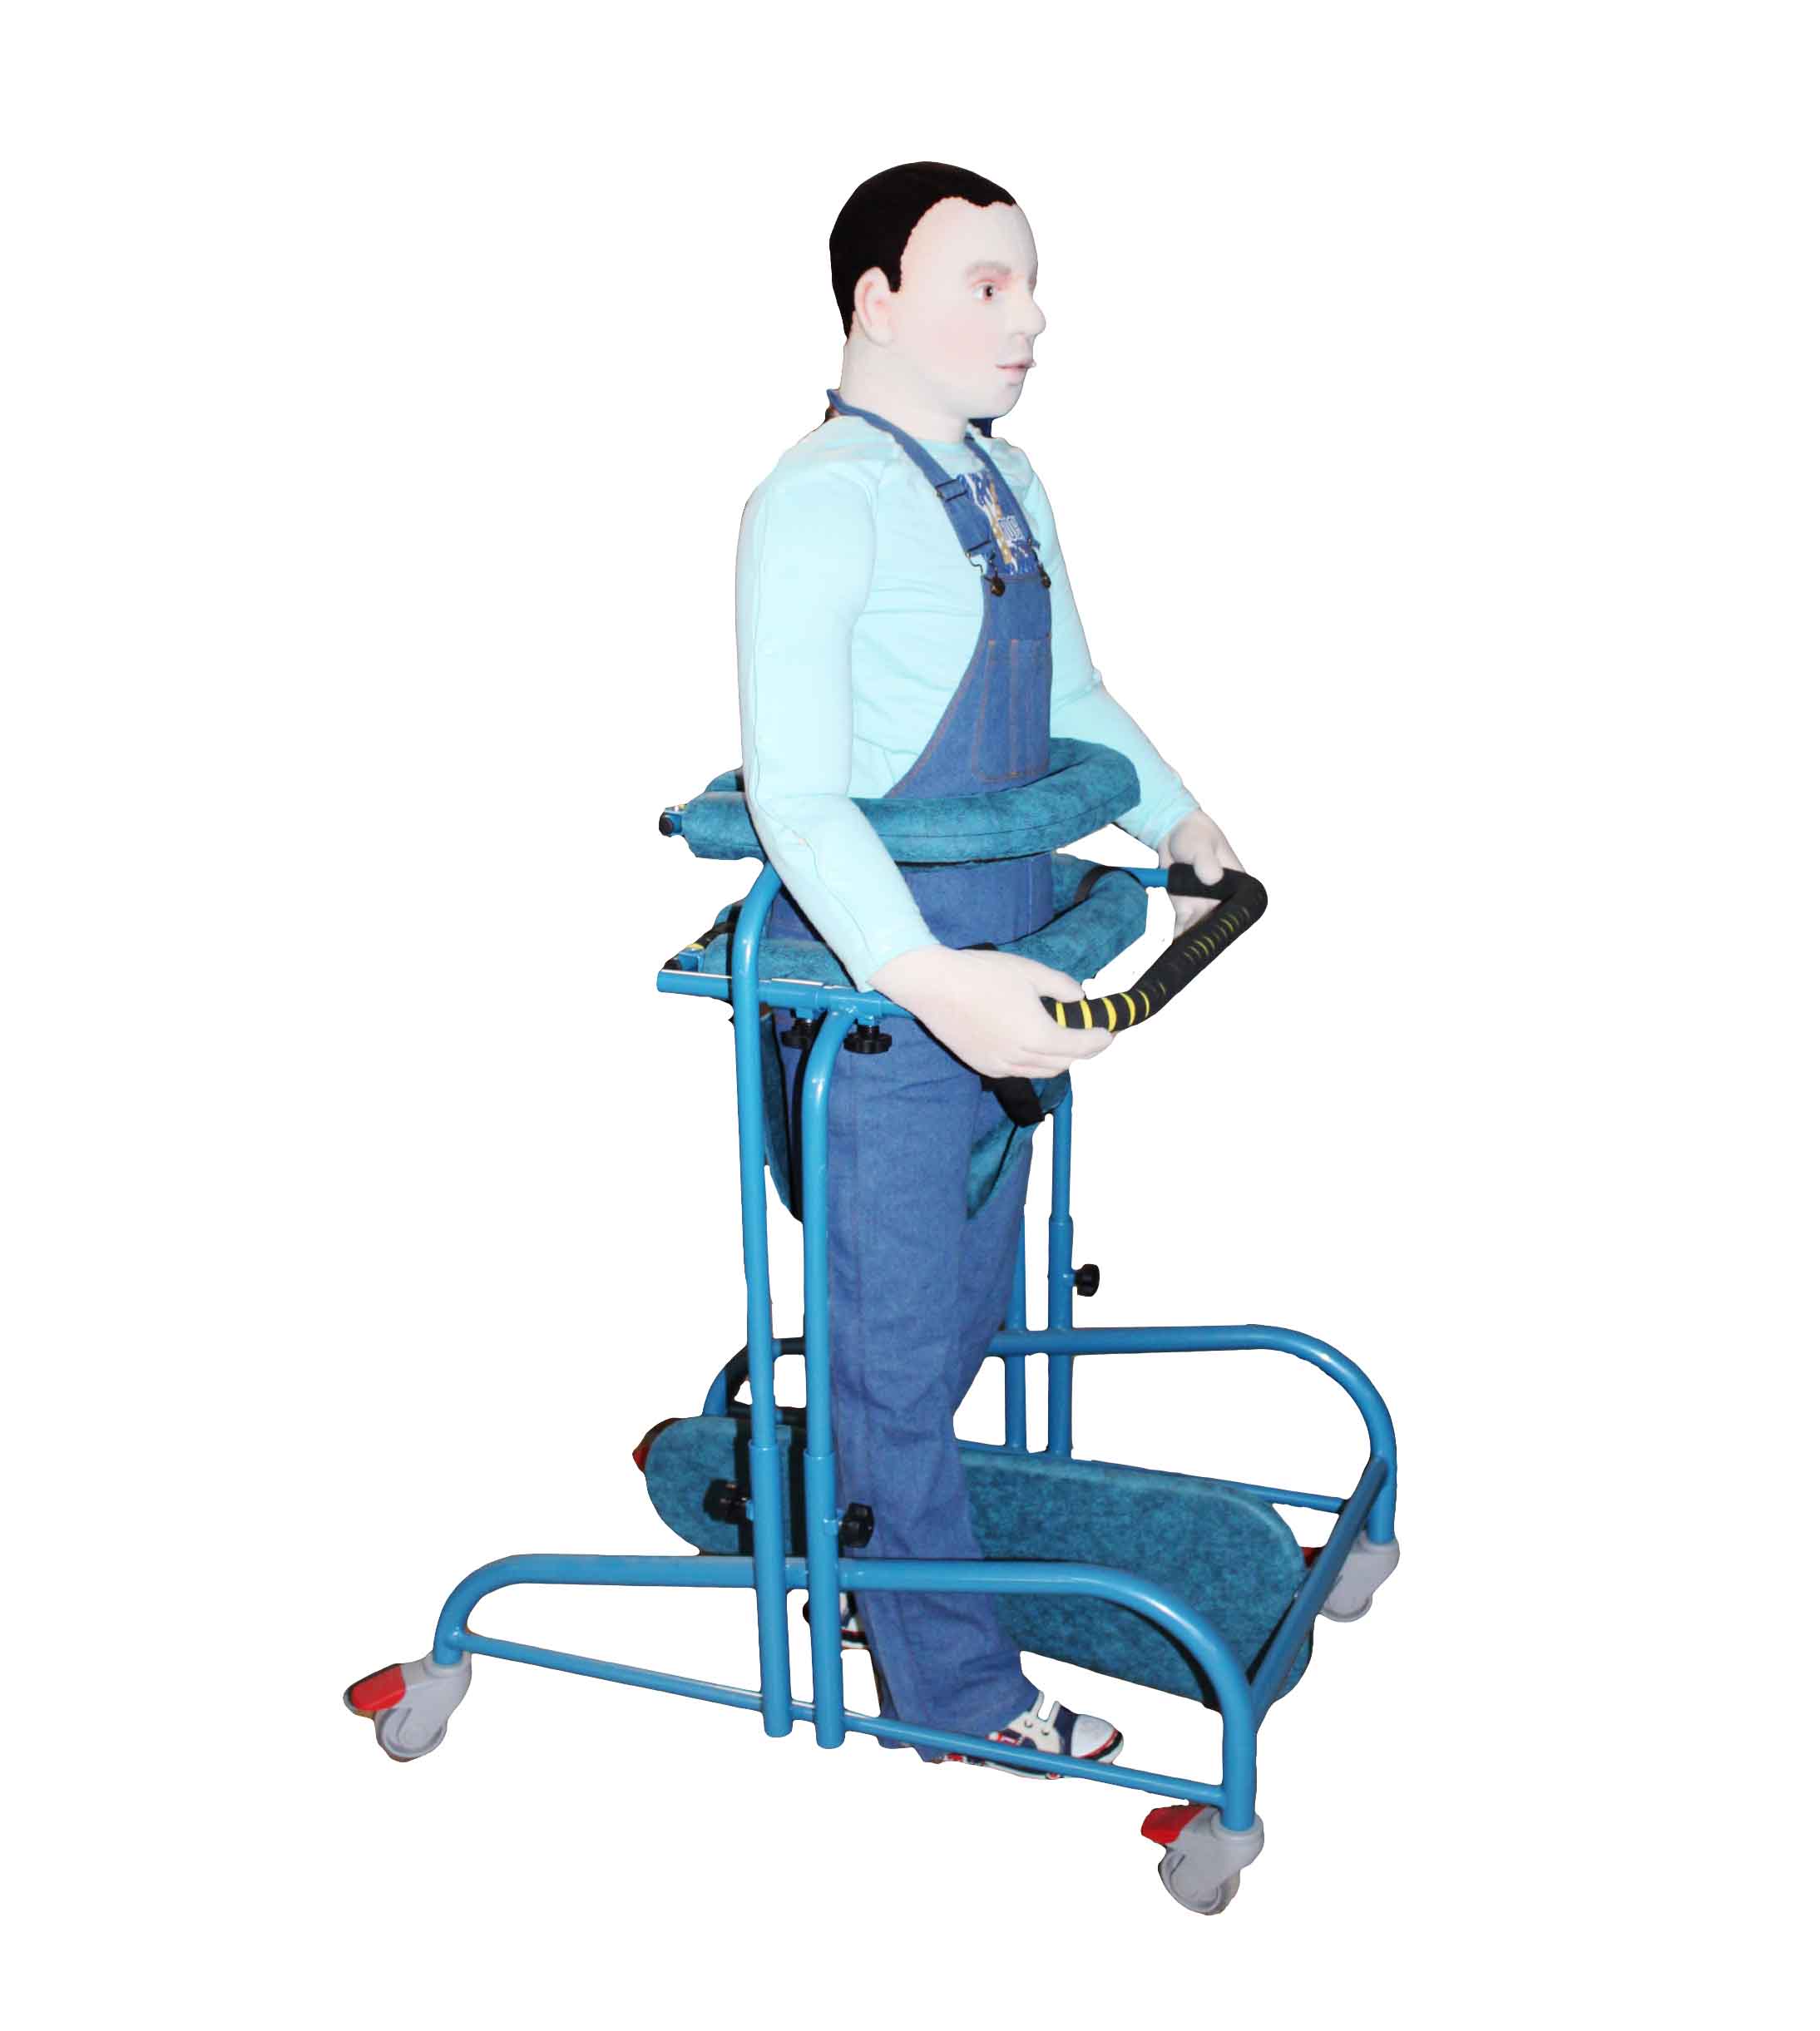 Как пересаживать больного на стул или кресло-каталку?